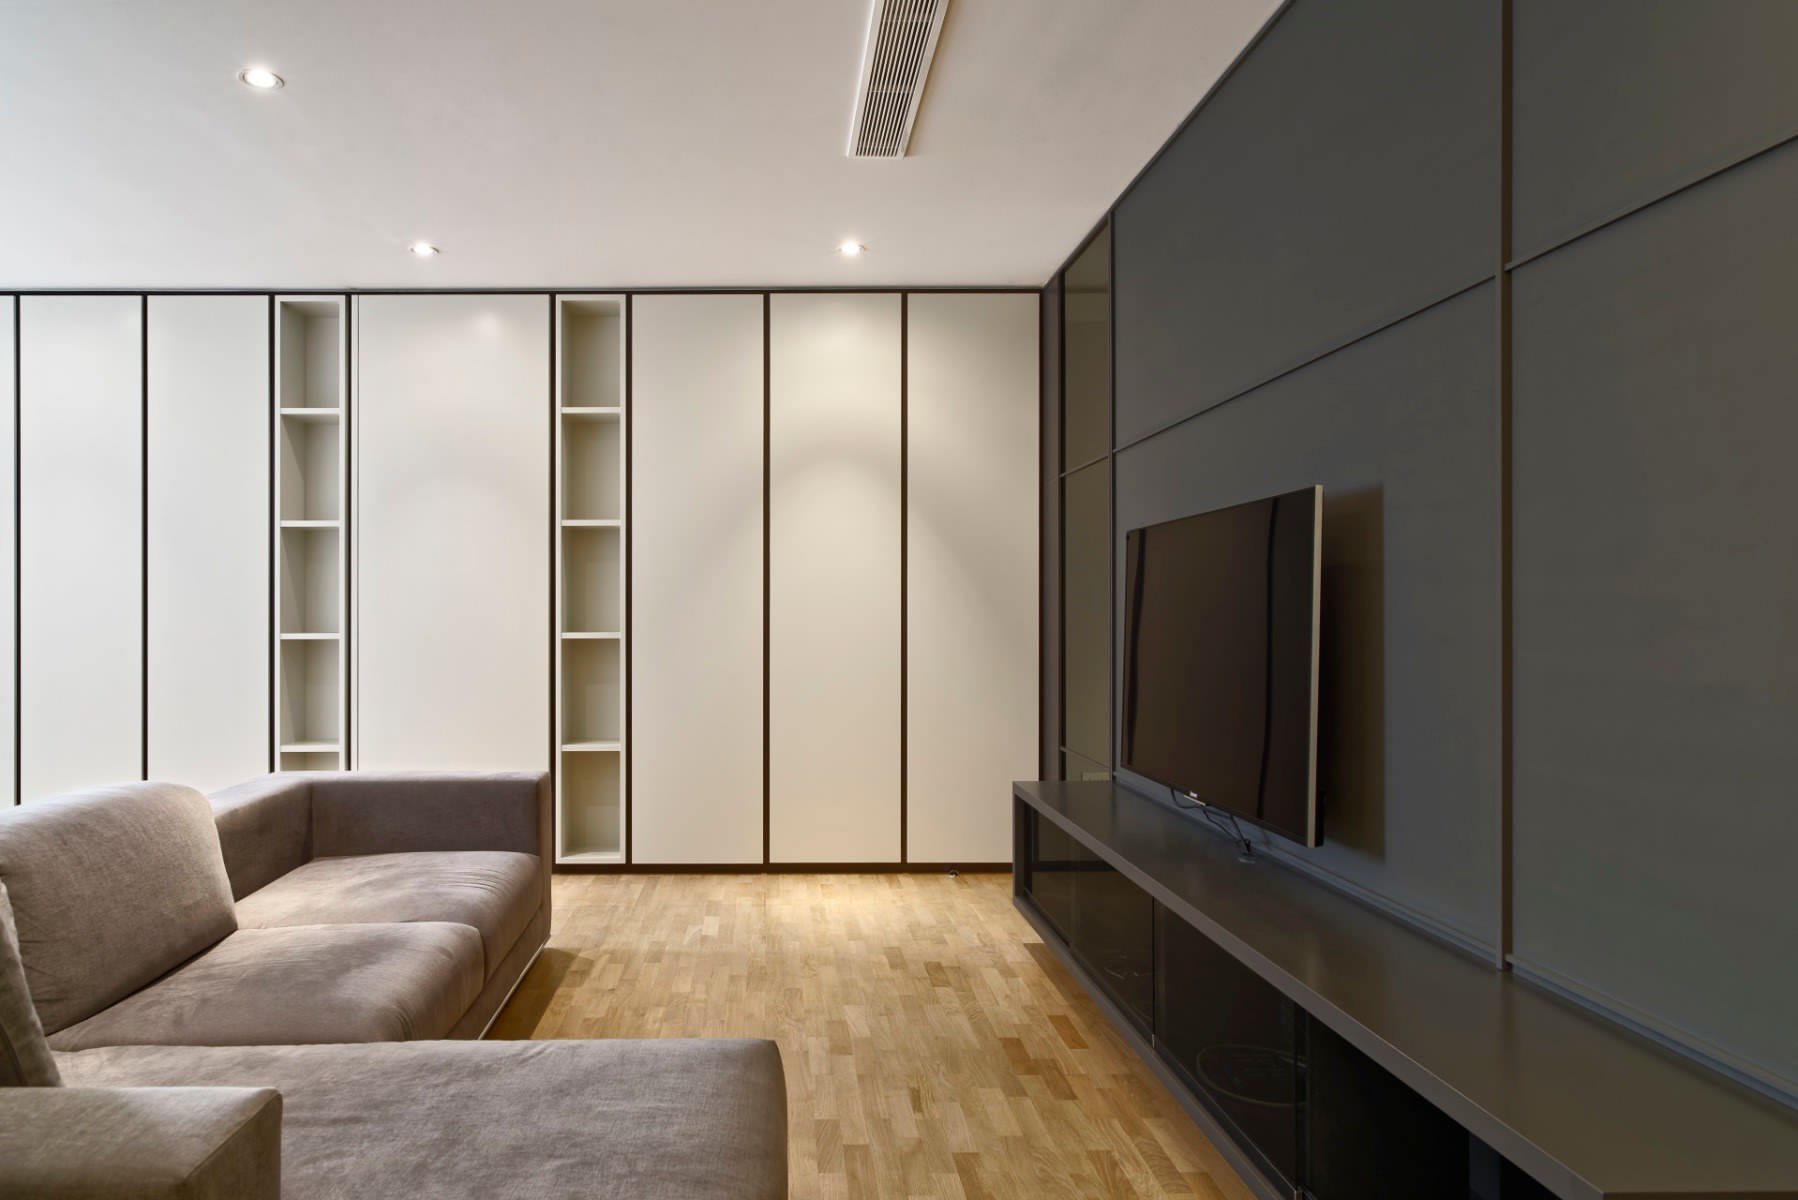 Furniture design, interior design, Malta. Progetto di interior design CMC La Torre